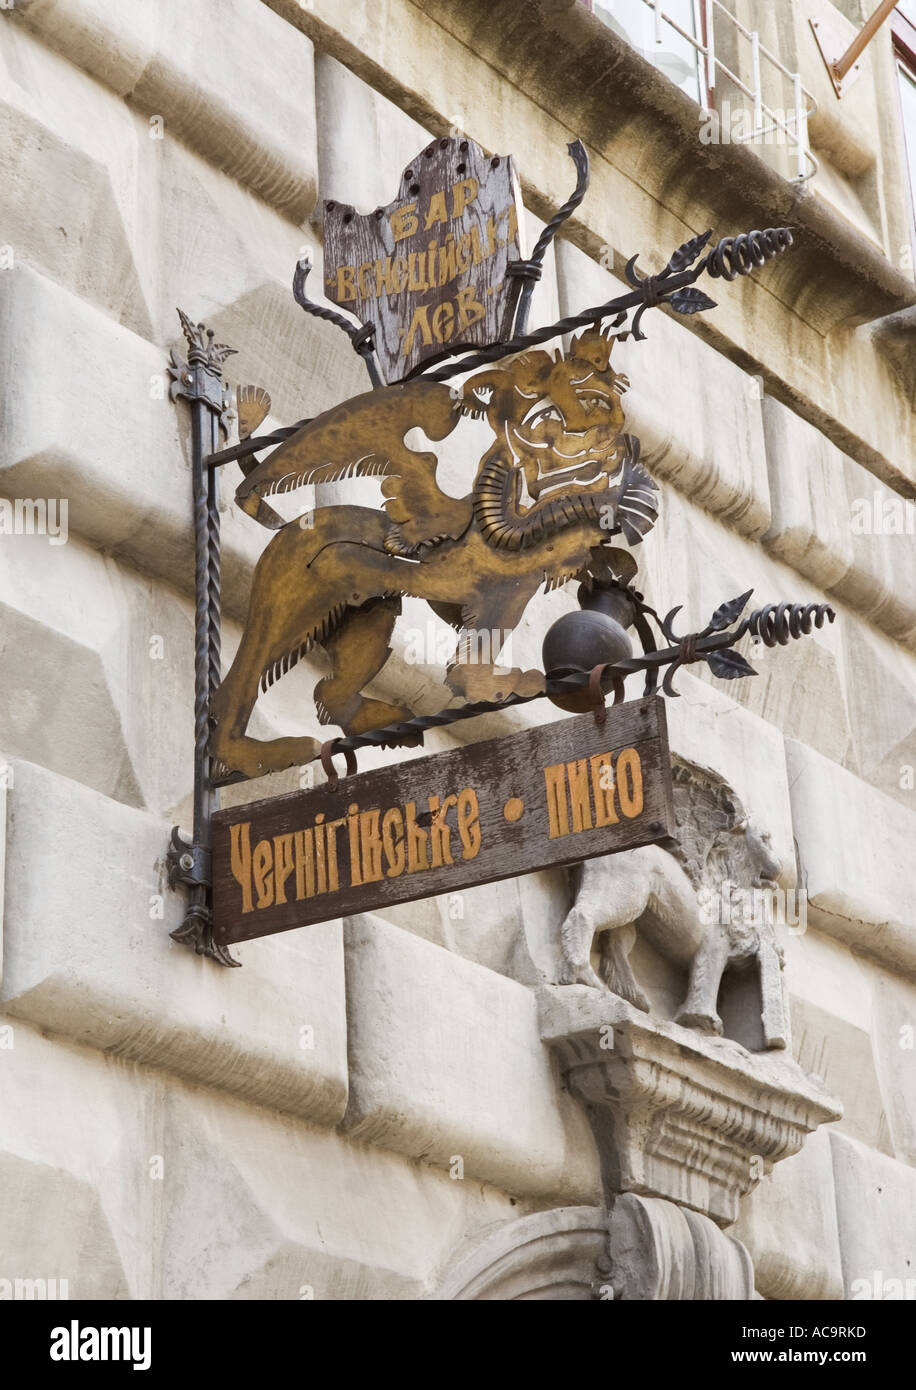 Lion segno per una società di birra Chernihivske in Lviv Ucraina Foto Stock